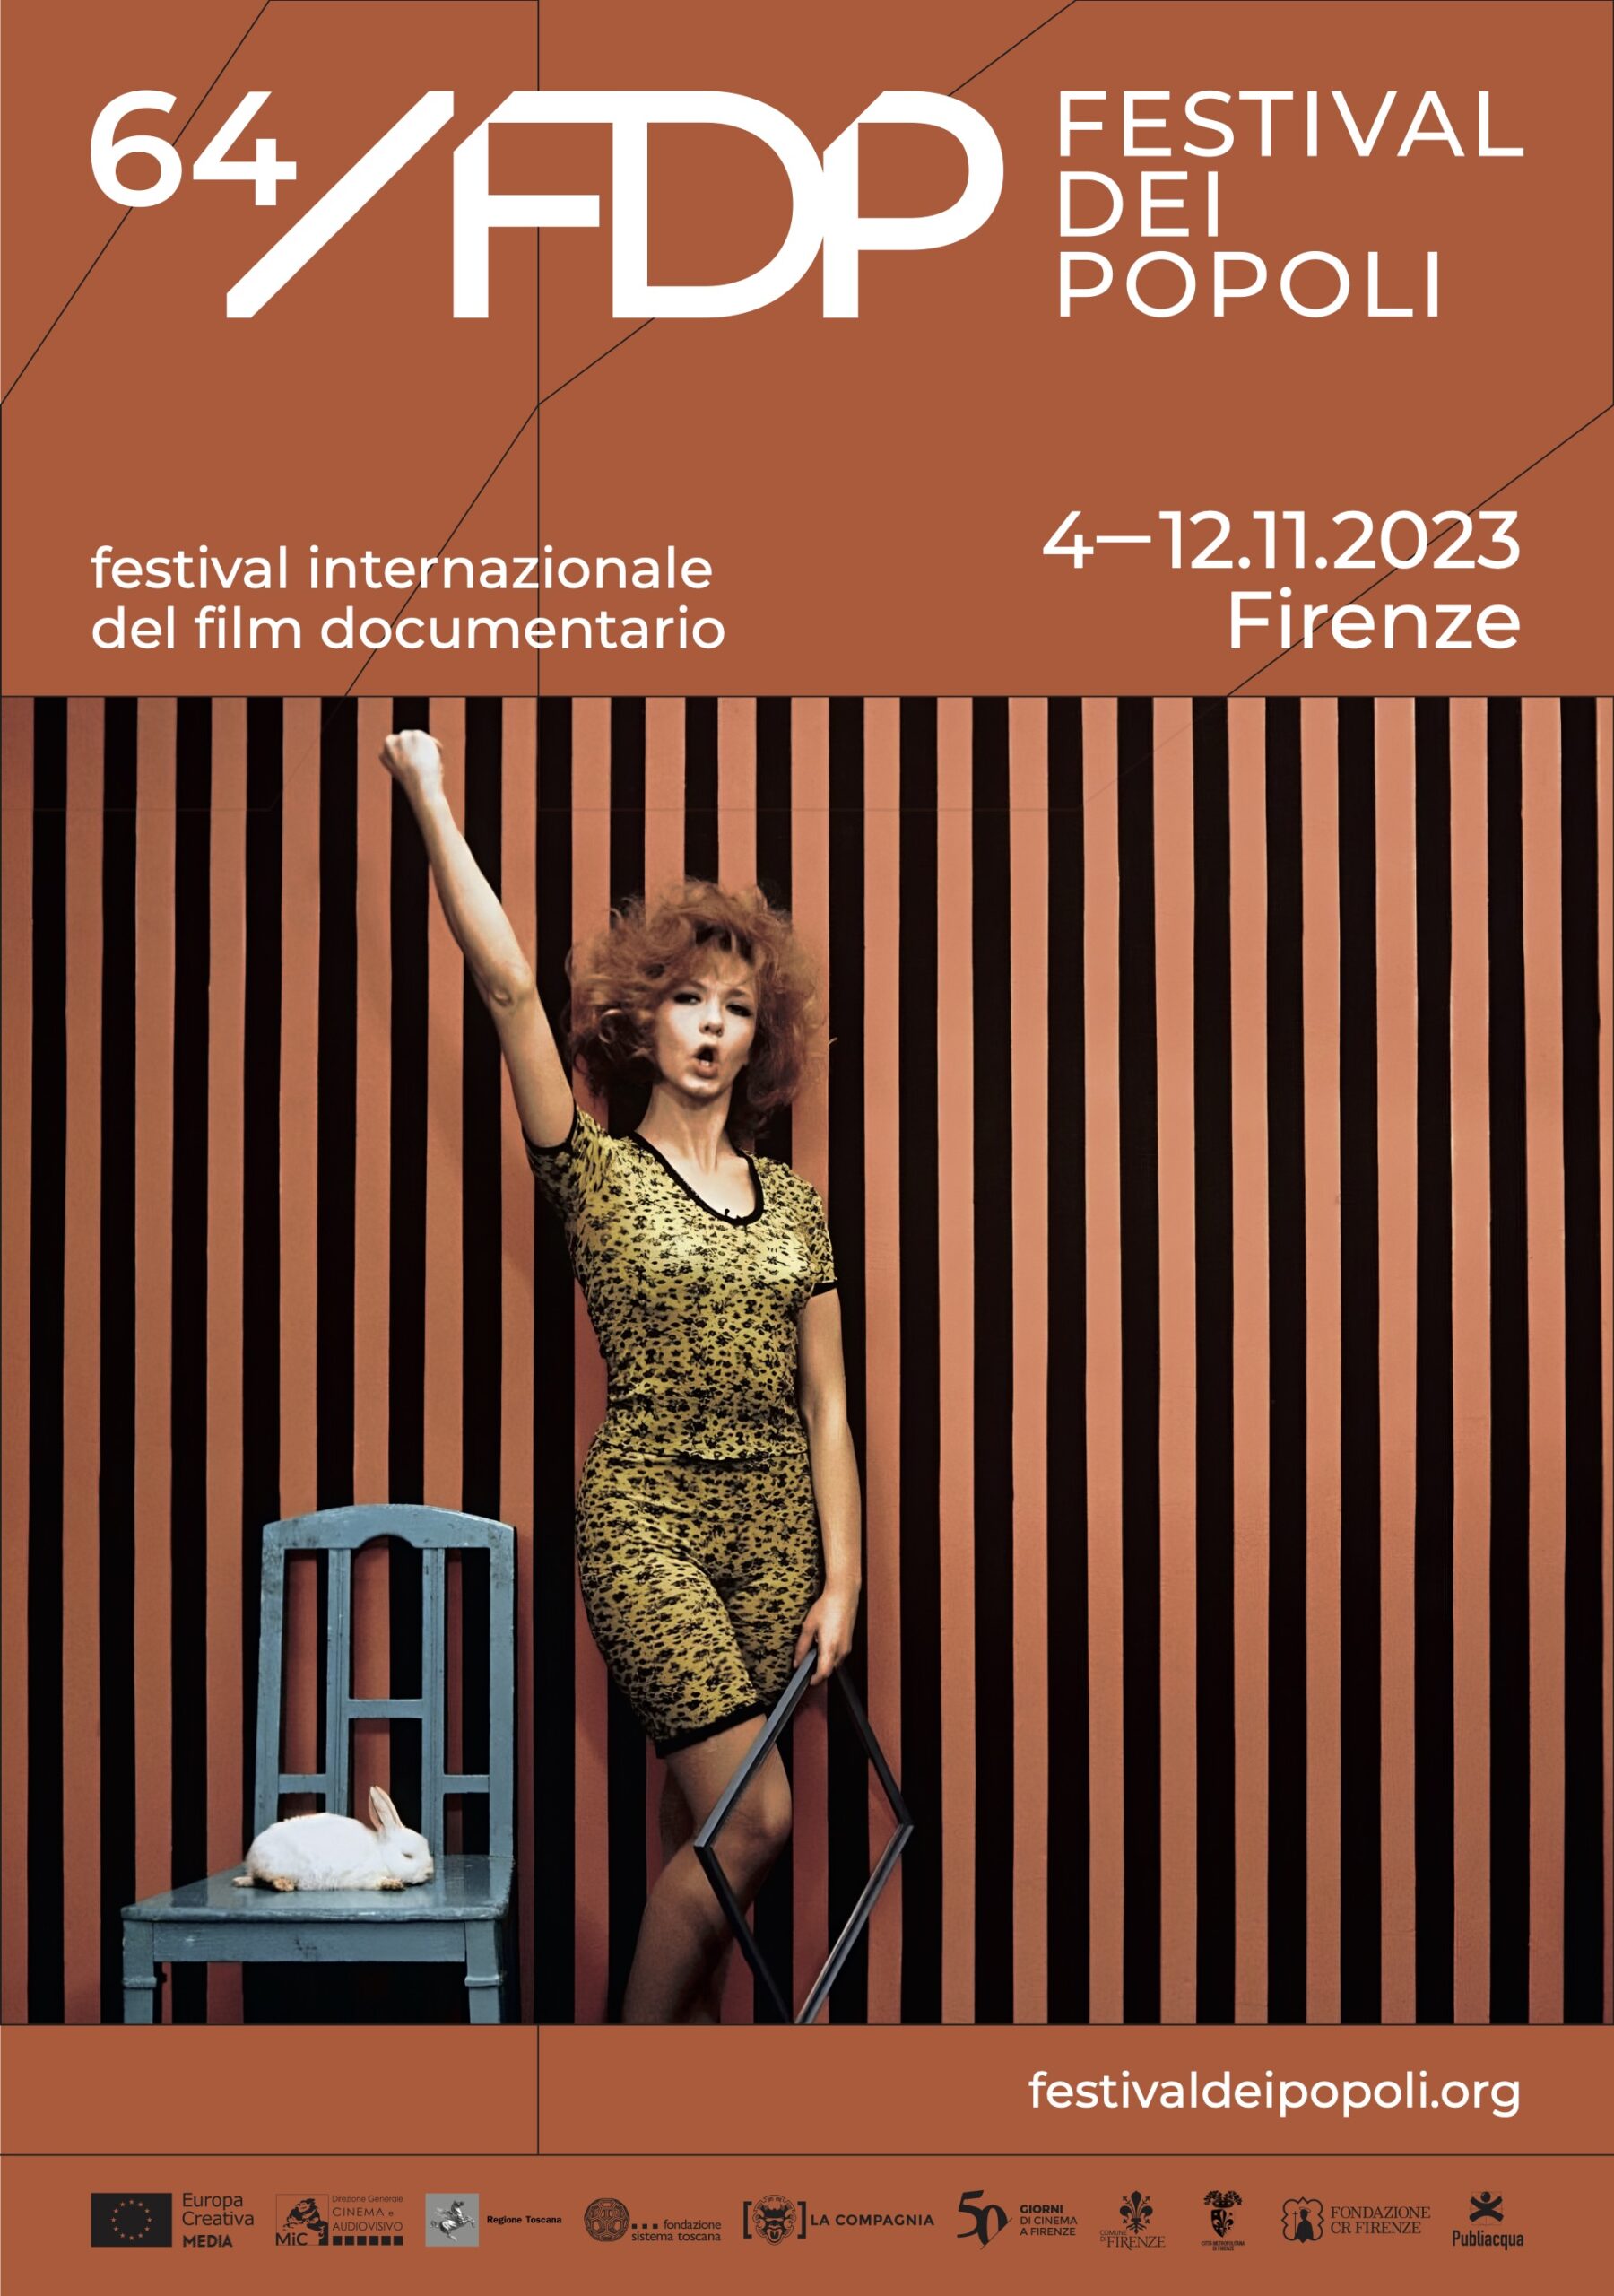 Svelato il manifesto della 64esima edizione del Festival dei Popoli, a Firenze dal 4 al 12 novembre